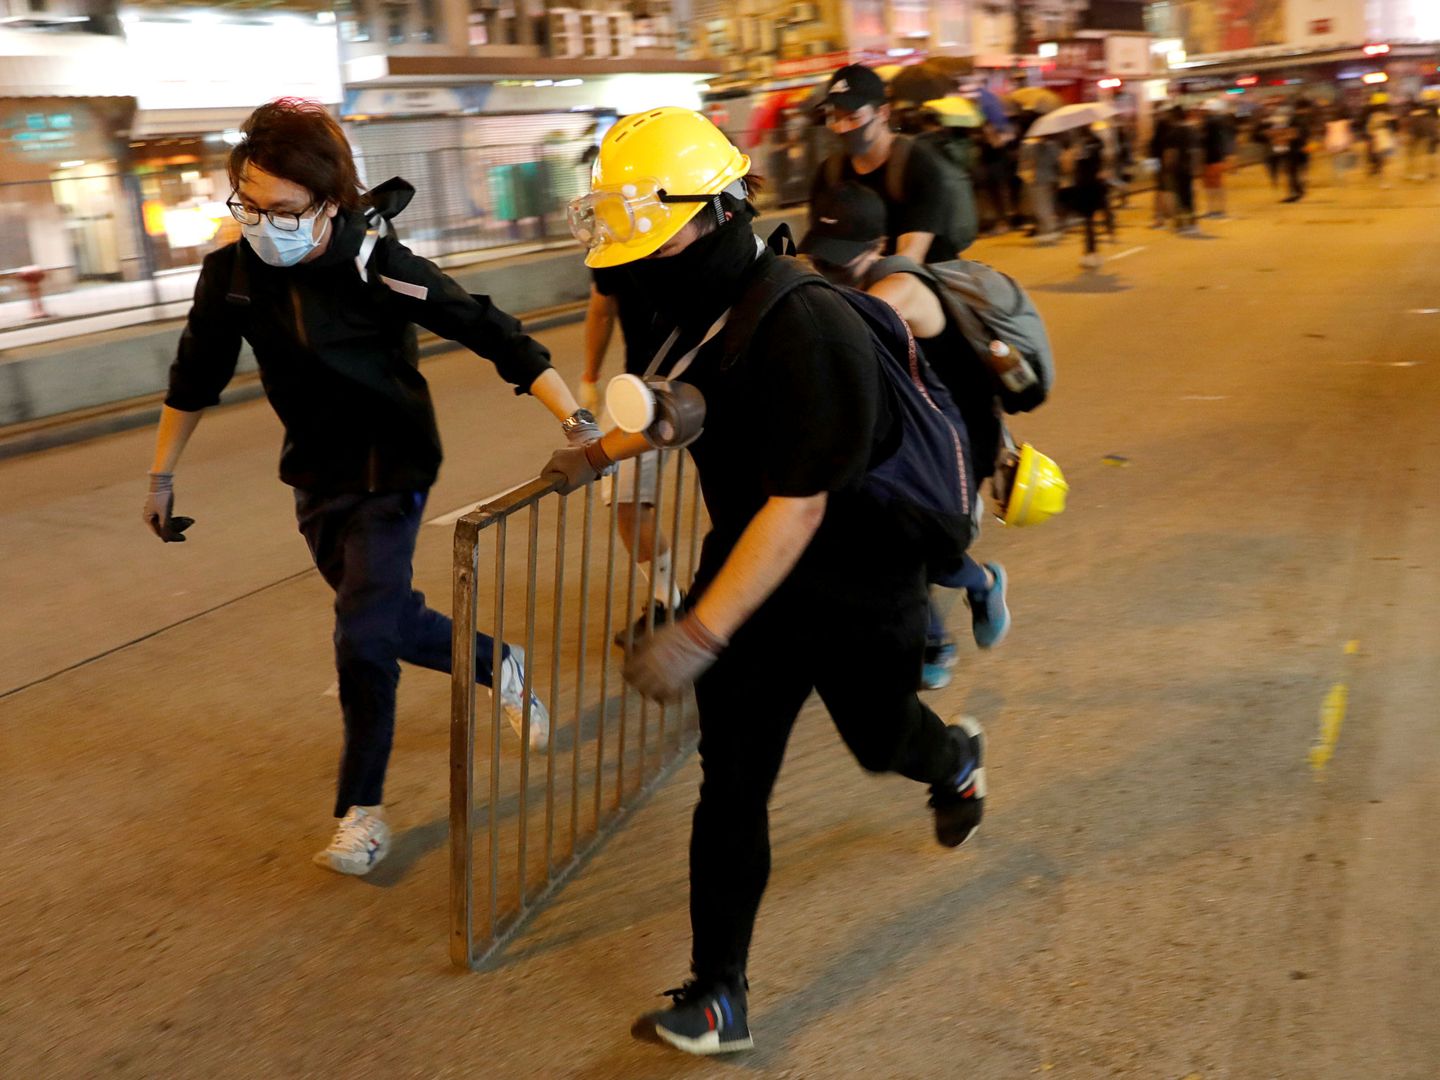 Protestantes construyendo barricadas durante la marcha en Hong Kong. (Reuters)